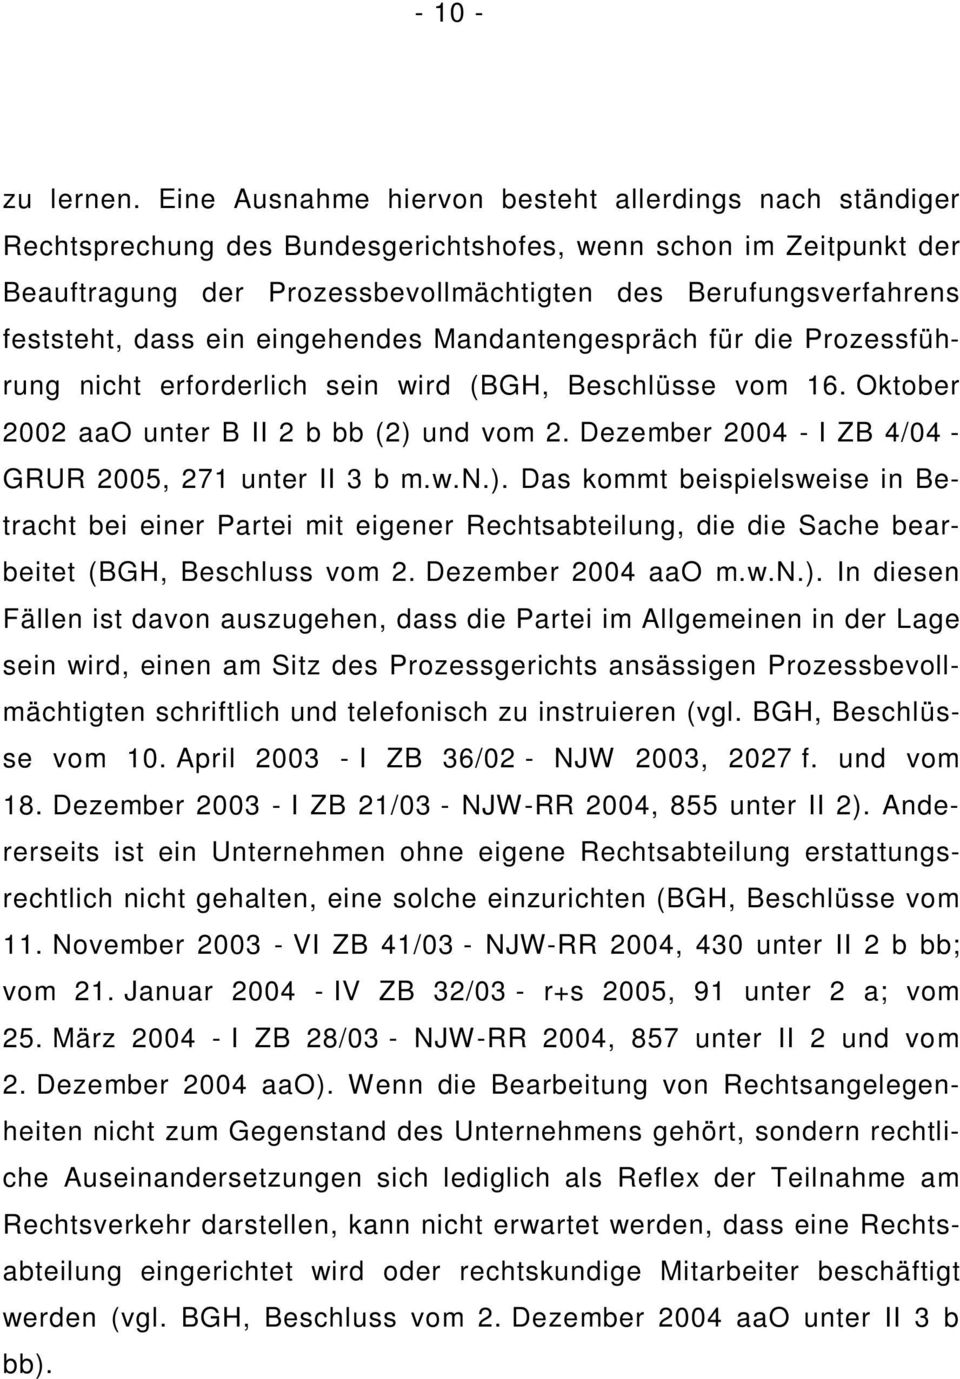 dass ein eingehendes Mandantengespräch für die Prozessführung nicht erforderlich sein wird (BGH, Beschlüsse vom 16. Oktober 2002 aao unter B II 2 b bb (2) und vom 2.